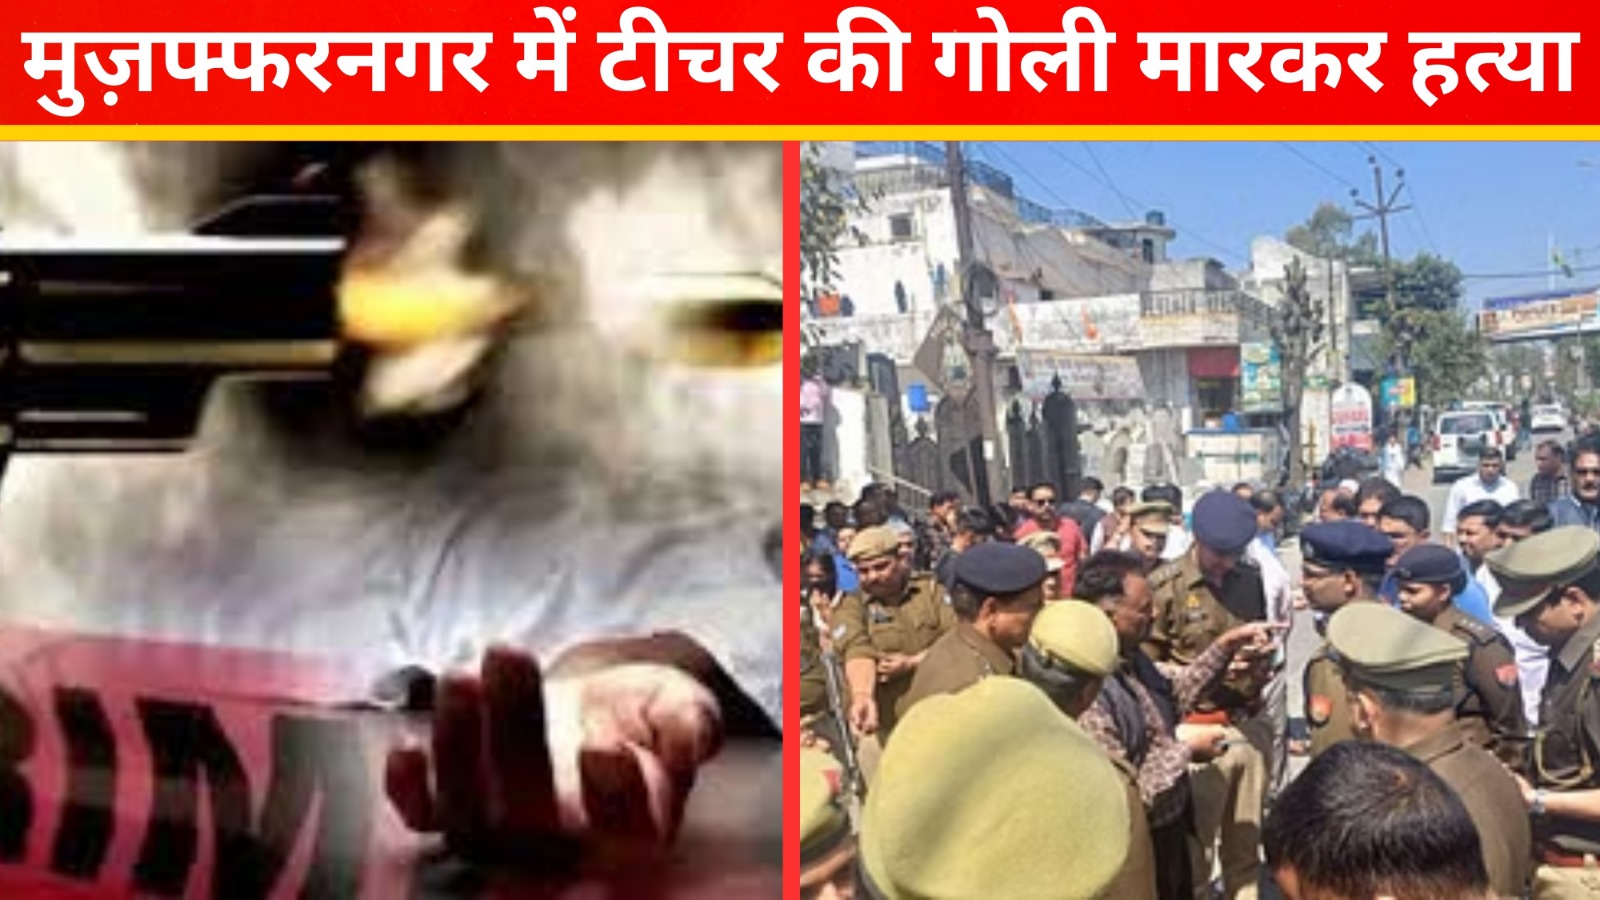 मुजफ्फरनगर में टीचर की गोली मार कर हत्या | UP News | Great Post New